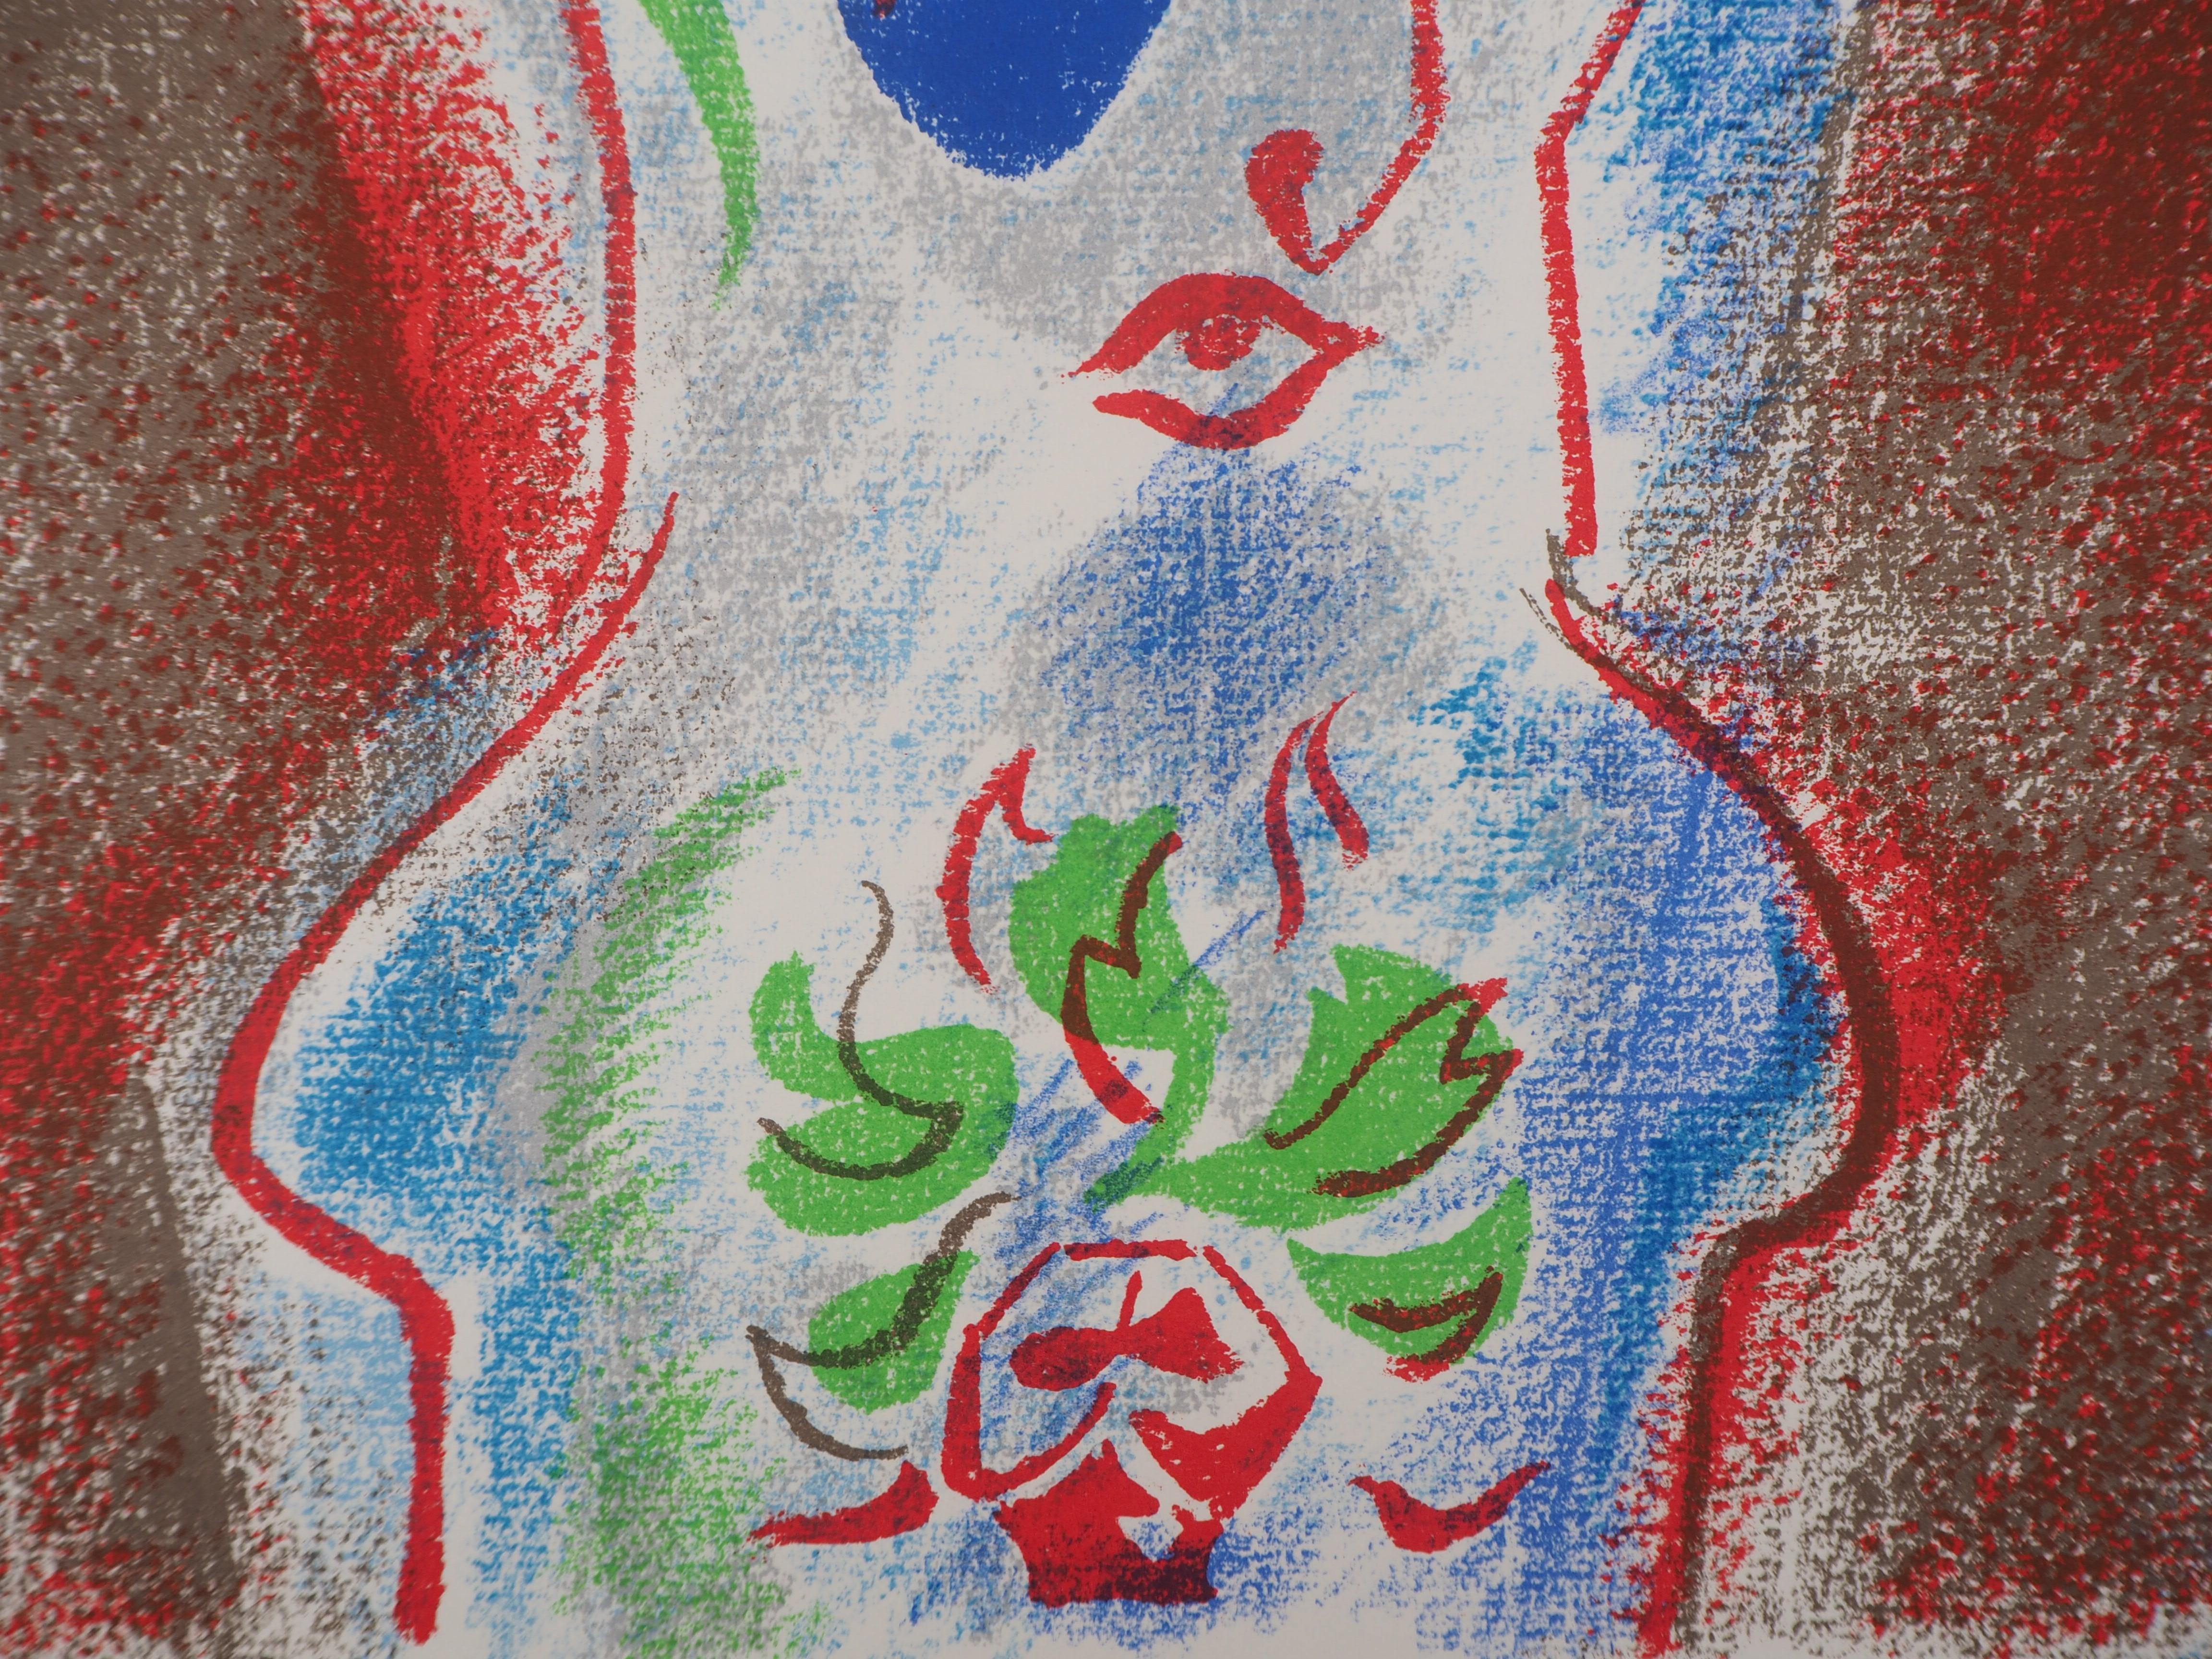 André Masson
Amor, der Gott der Begierde, 1972

Original-Lithographie
Gedruckt in der Werkstatt von Mourlot
Auf Pergament 31 x 24 cm (ca. 12,2 x 9,5 in)

Herausgegeben von San Lazzaro im Jahr 1972

Sehr guter Zustand, schöne Farben